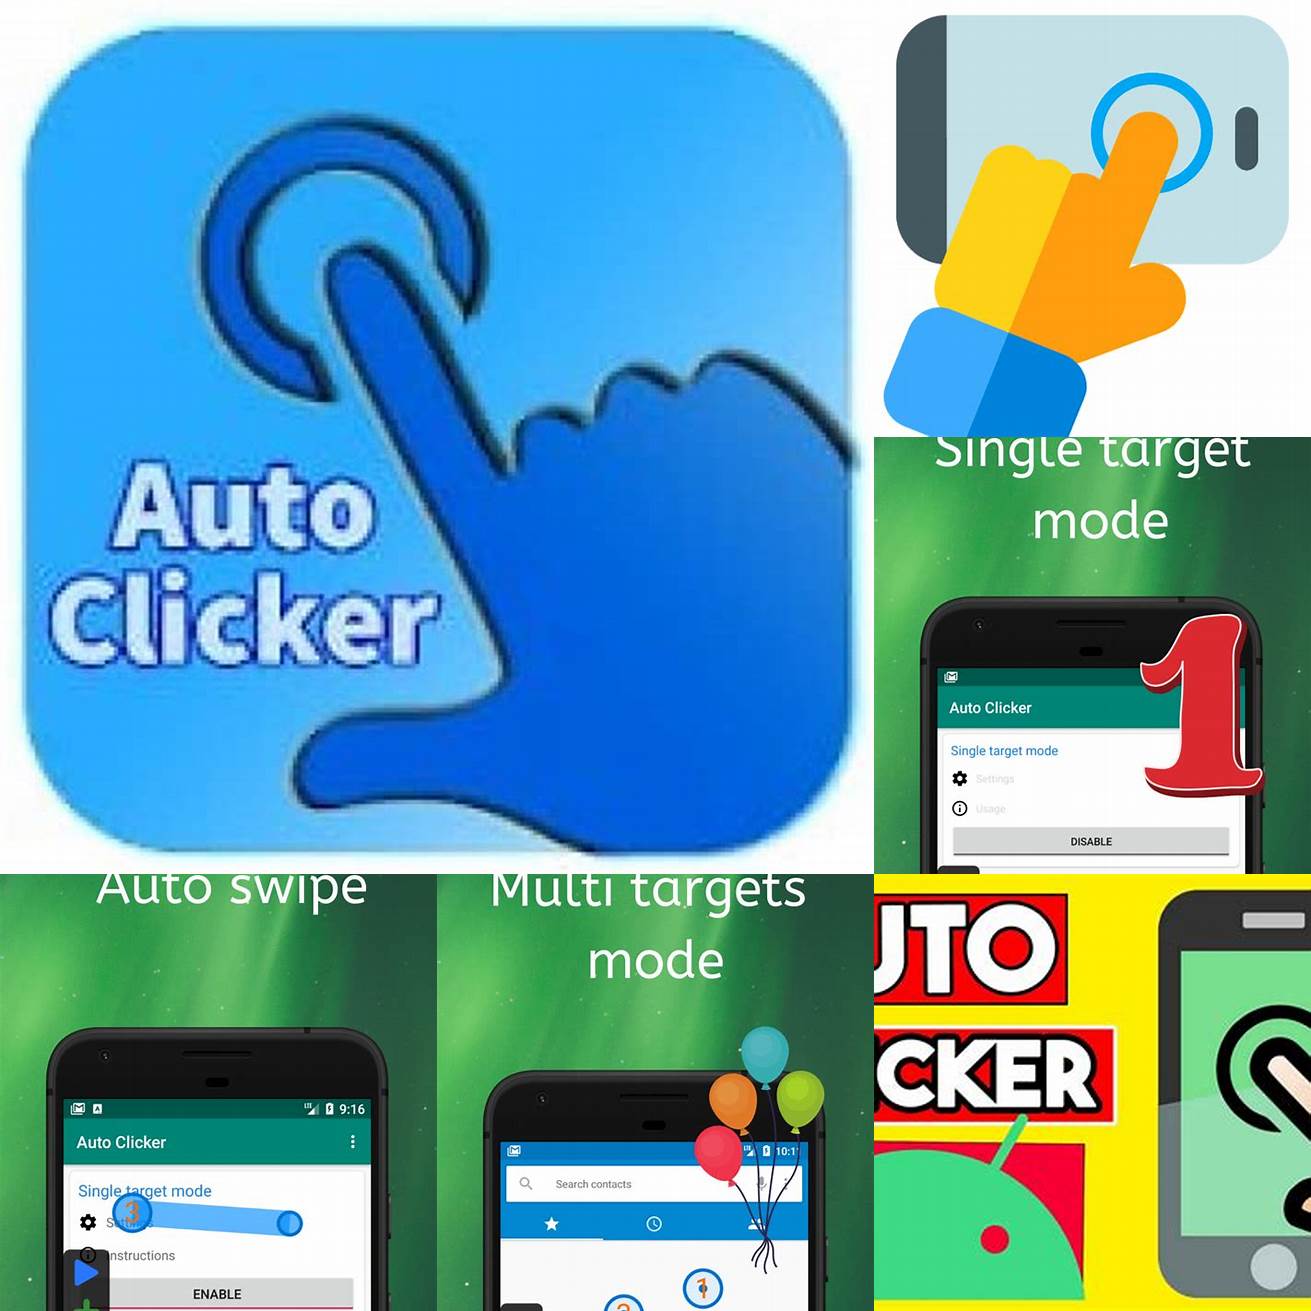 1 Auto Clicker - Automatic Tap